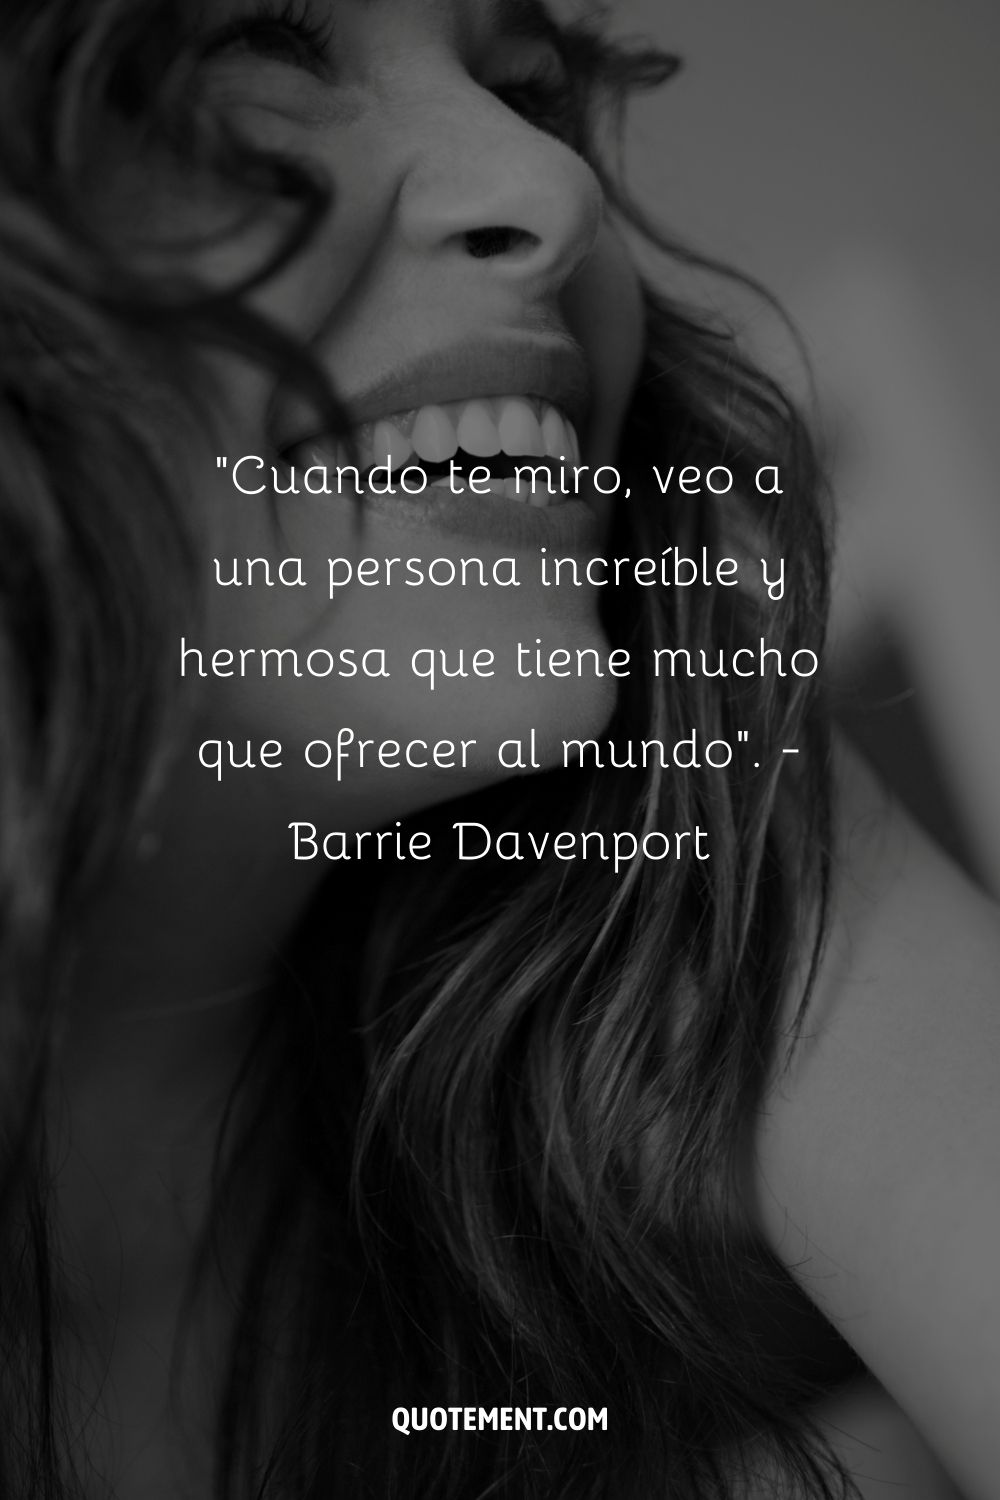 "Cuando te miro, veo a una persona increíble y hermosa que tiene mucho que ofrecer al mundo". - Barrie Davenport